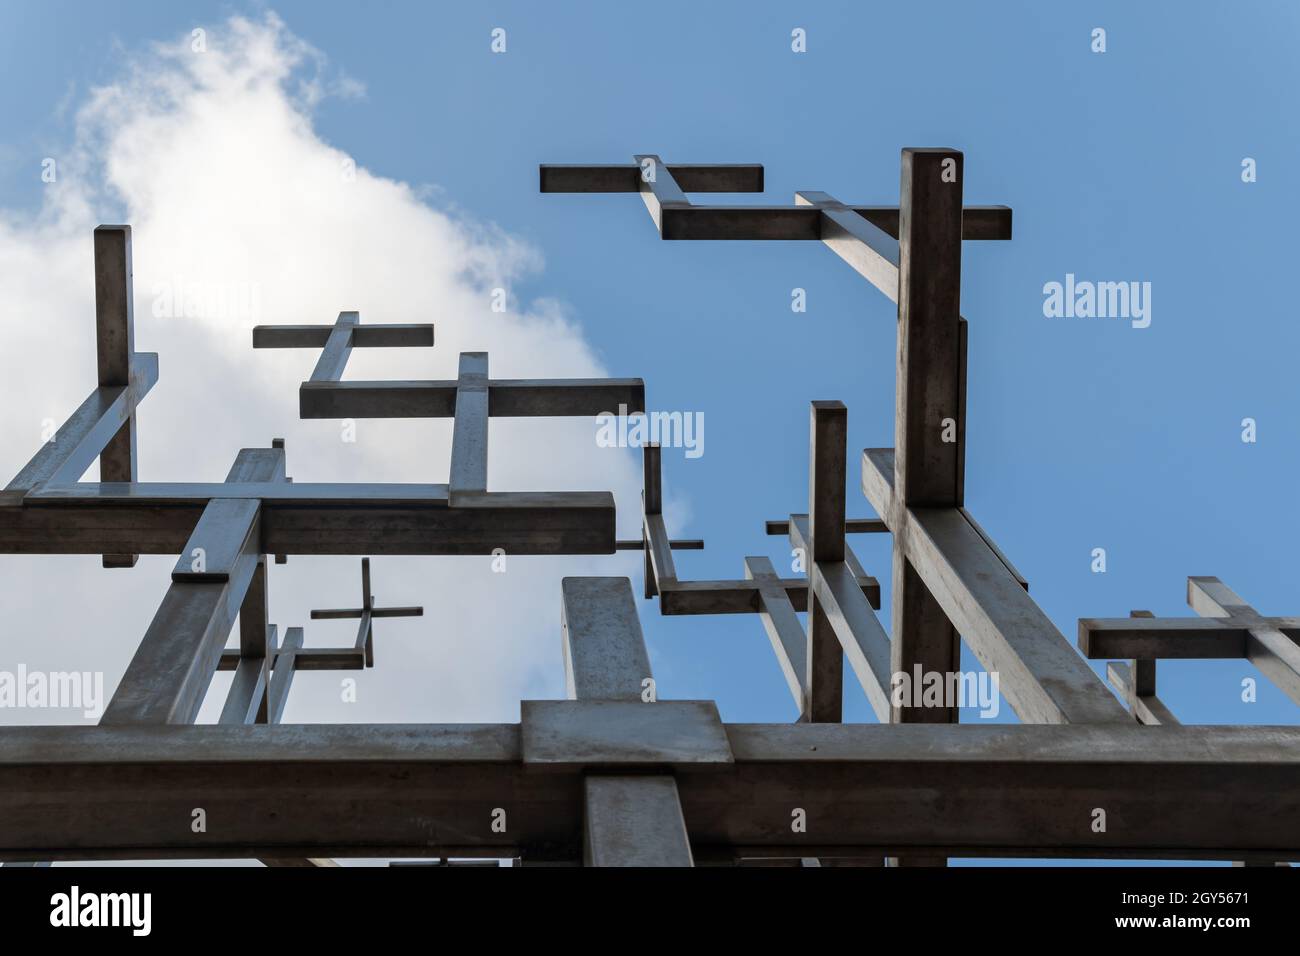 Randa, Espagne; octobre 03 2021: Gros plan d'une sculpture contemporaine en fer avec de multiples formes croisées, située dans le sanctuaire chrétien de Randa, isla Banque D'Images